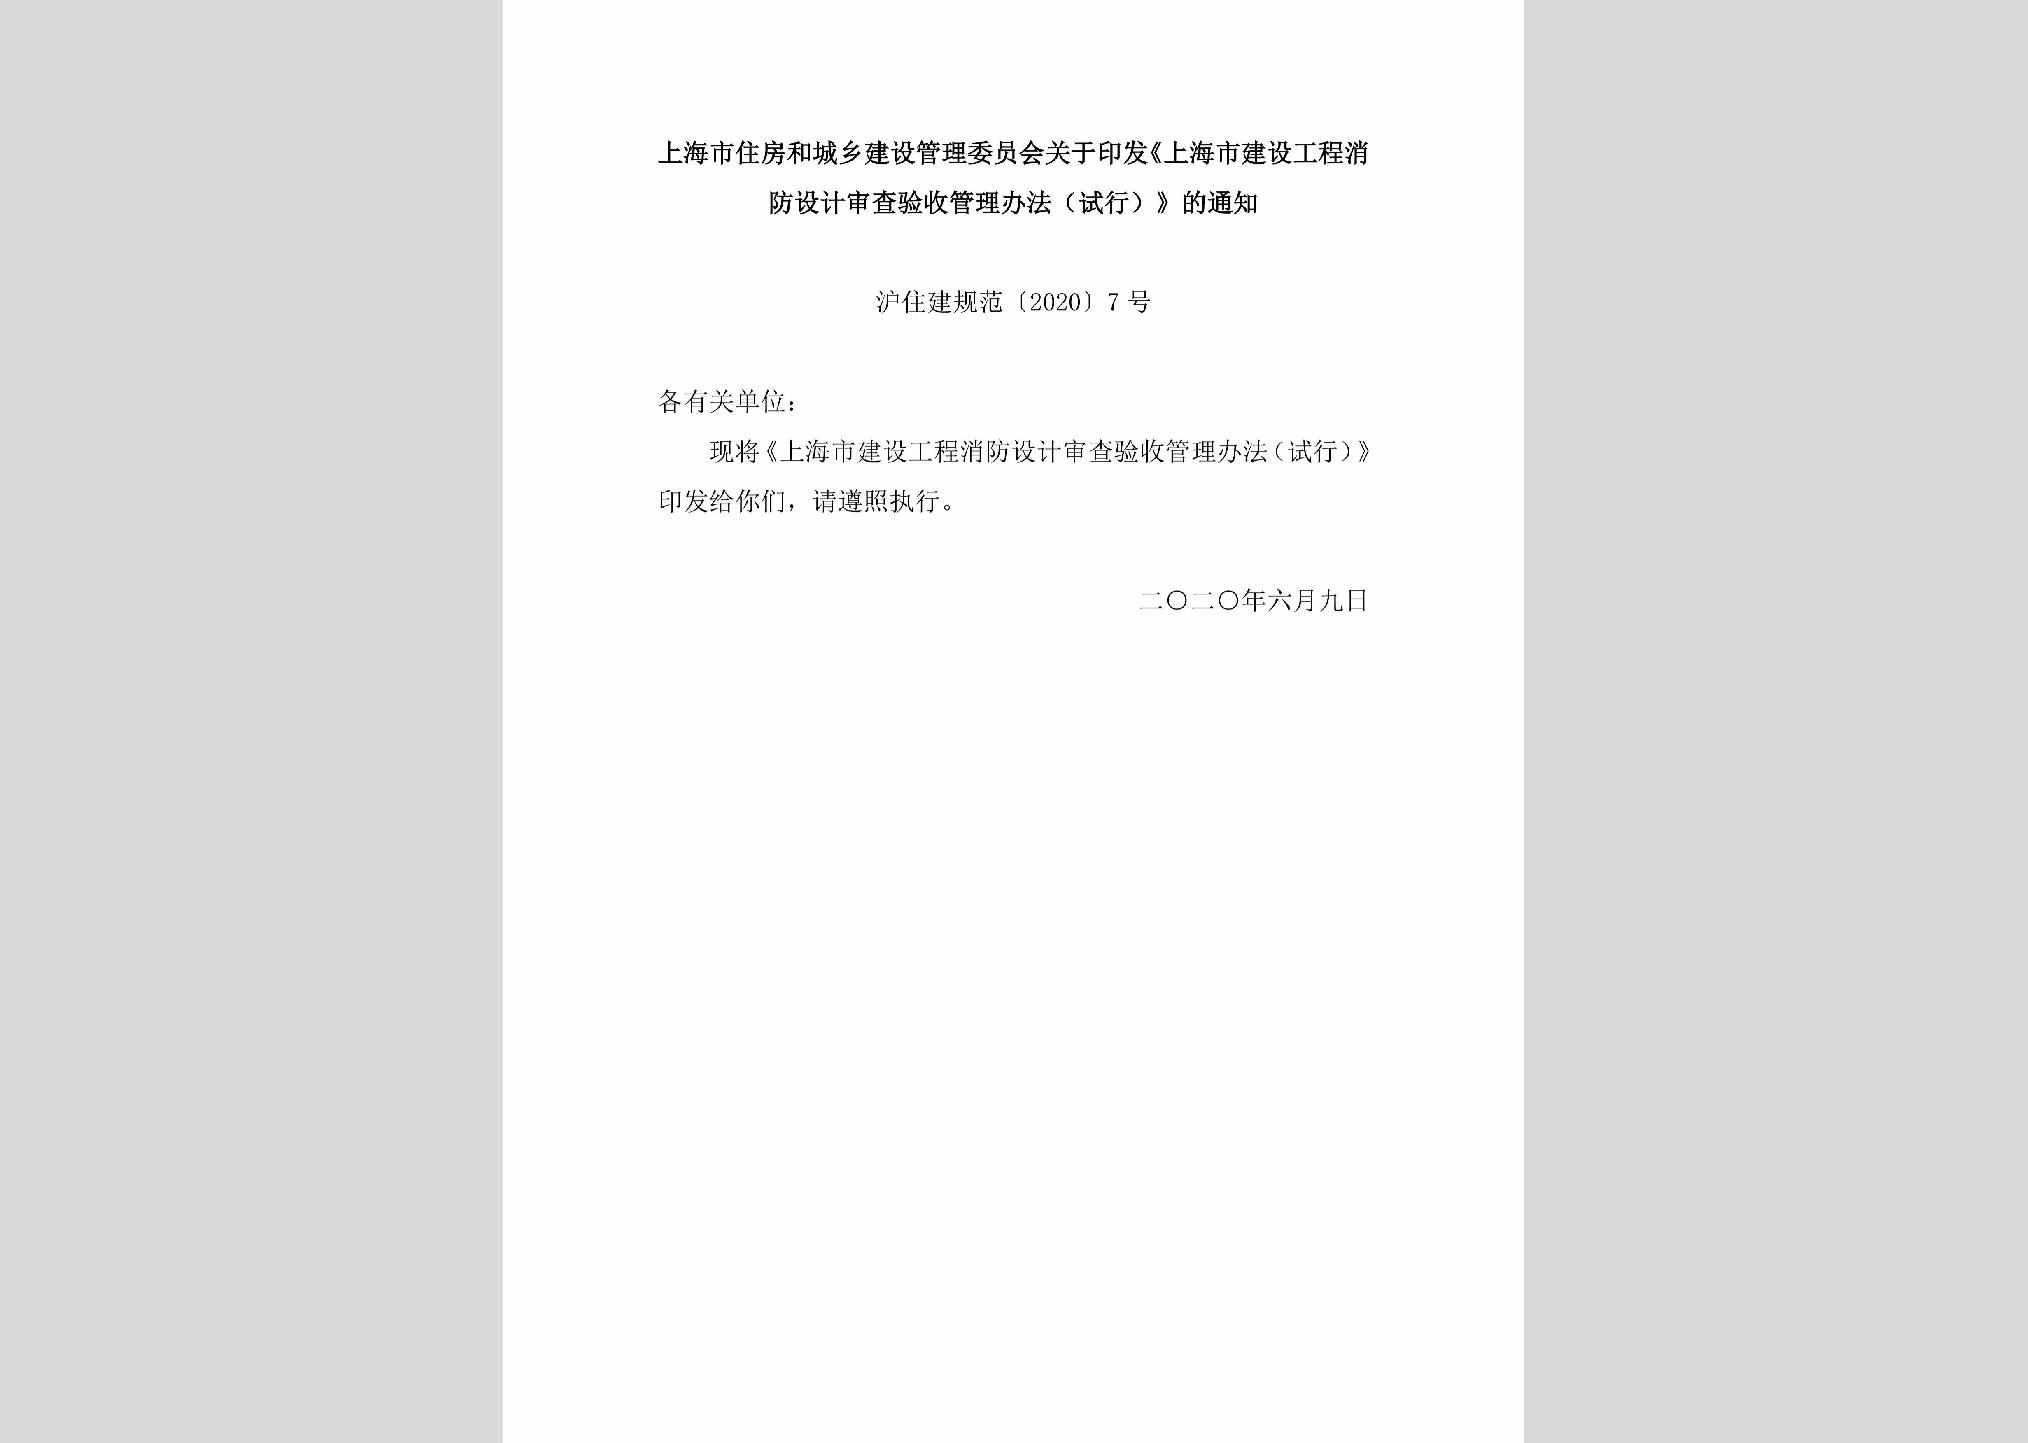 沪住建规范[2020]7号：上海市住房和城乡建设管理委员会关于印发《上海市建设工程消防设计审查验收管理办法（试行）》的通知